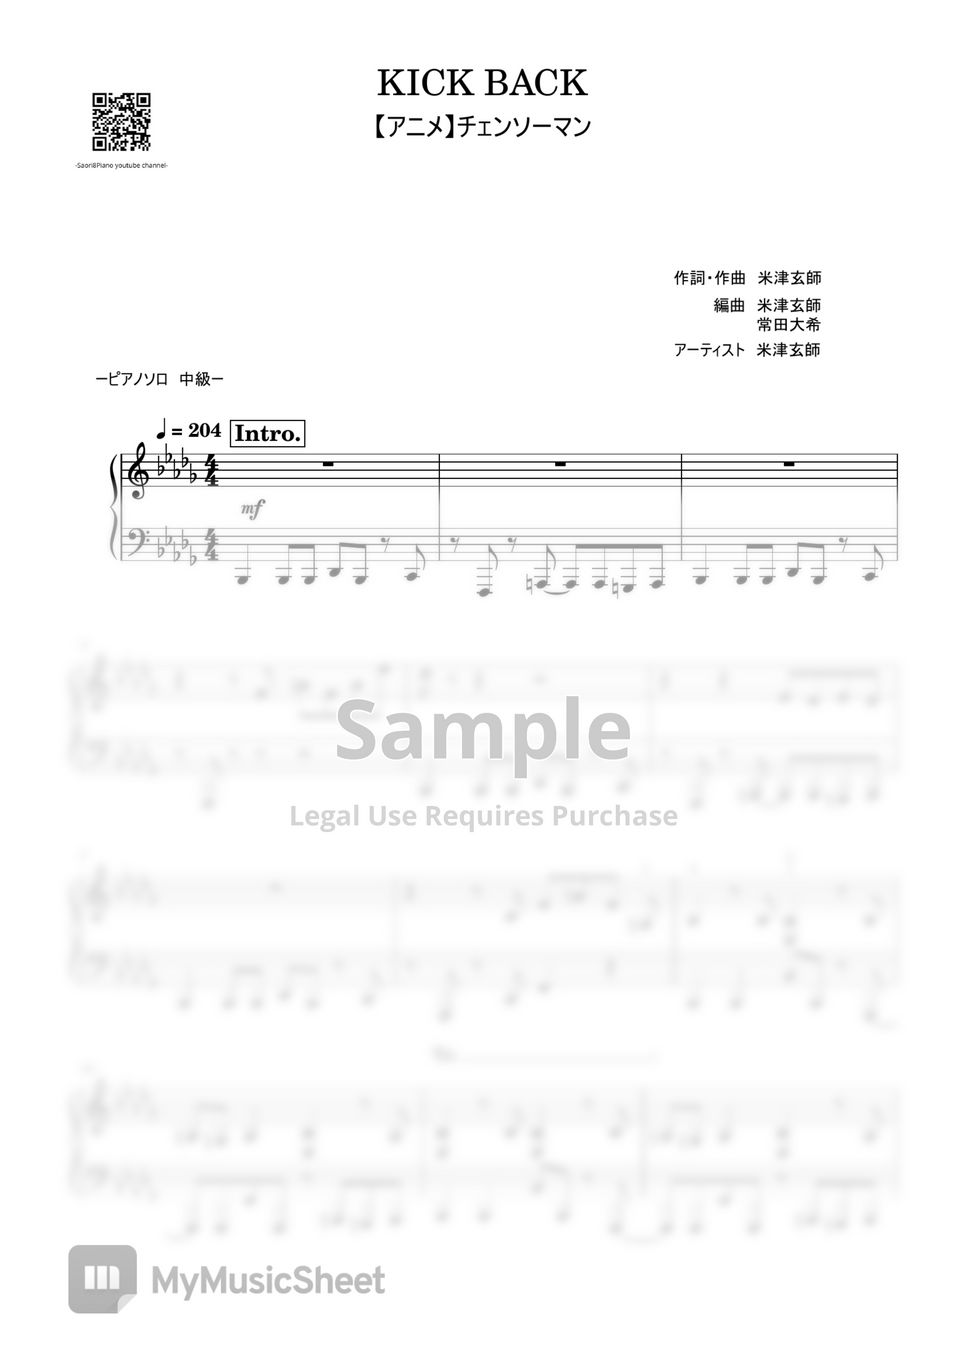 KICK BACK – Kenshi Yonezu (米津 玄師) Sheet music for Clarinet in